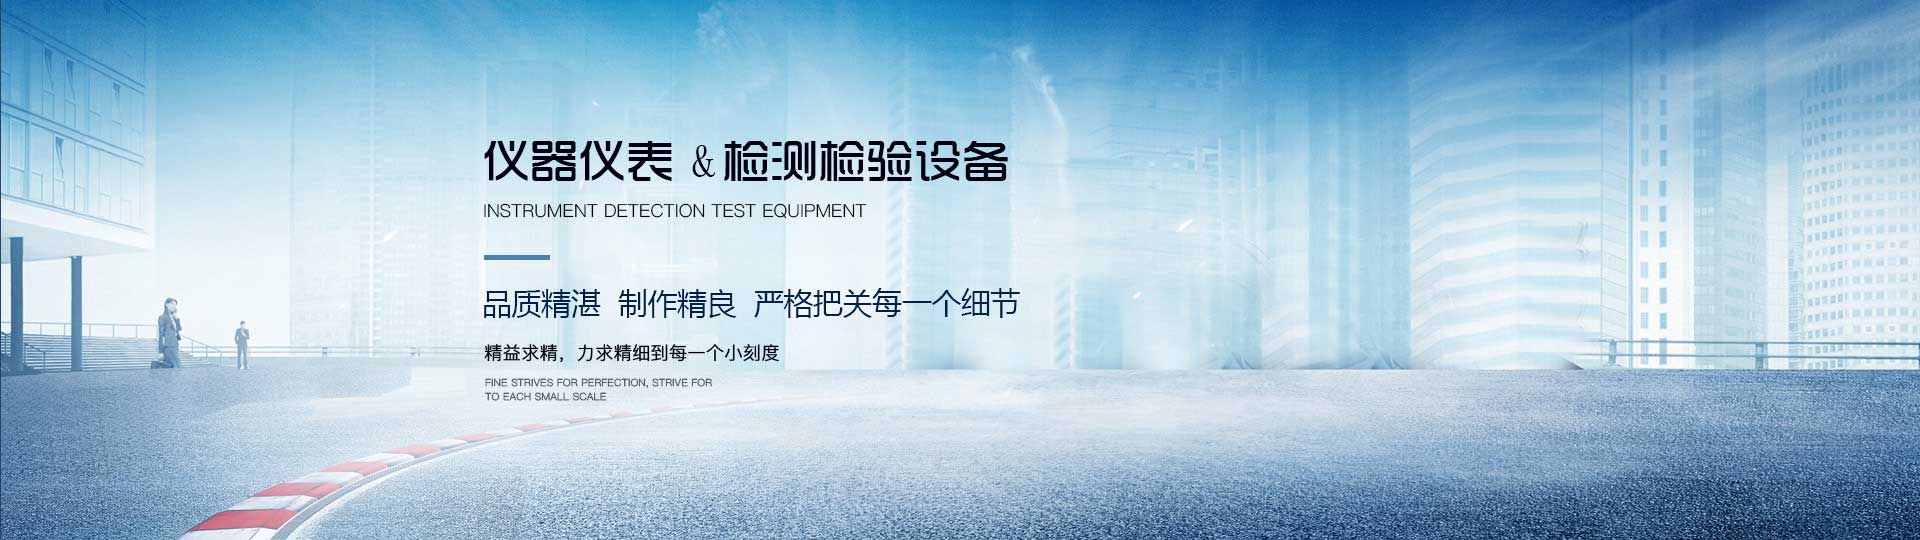 河南省德海仪器仪表有限公司